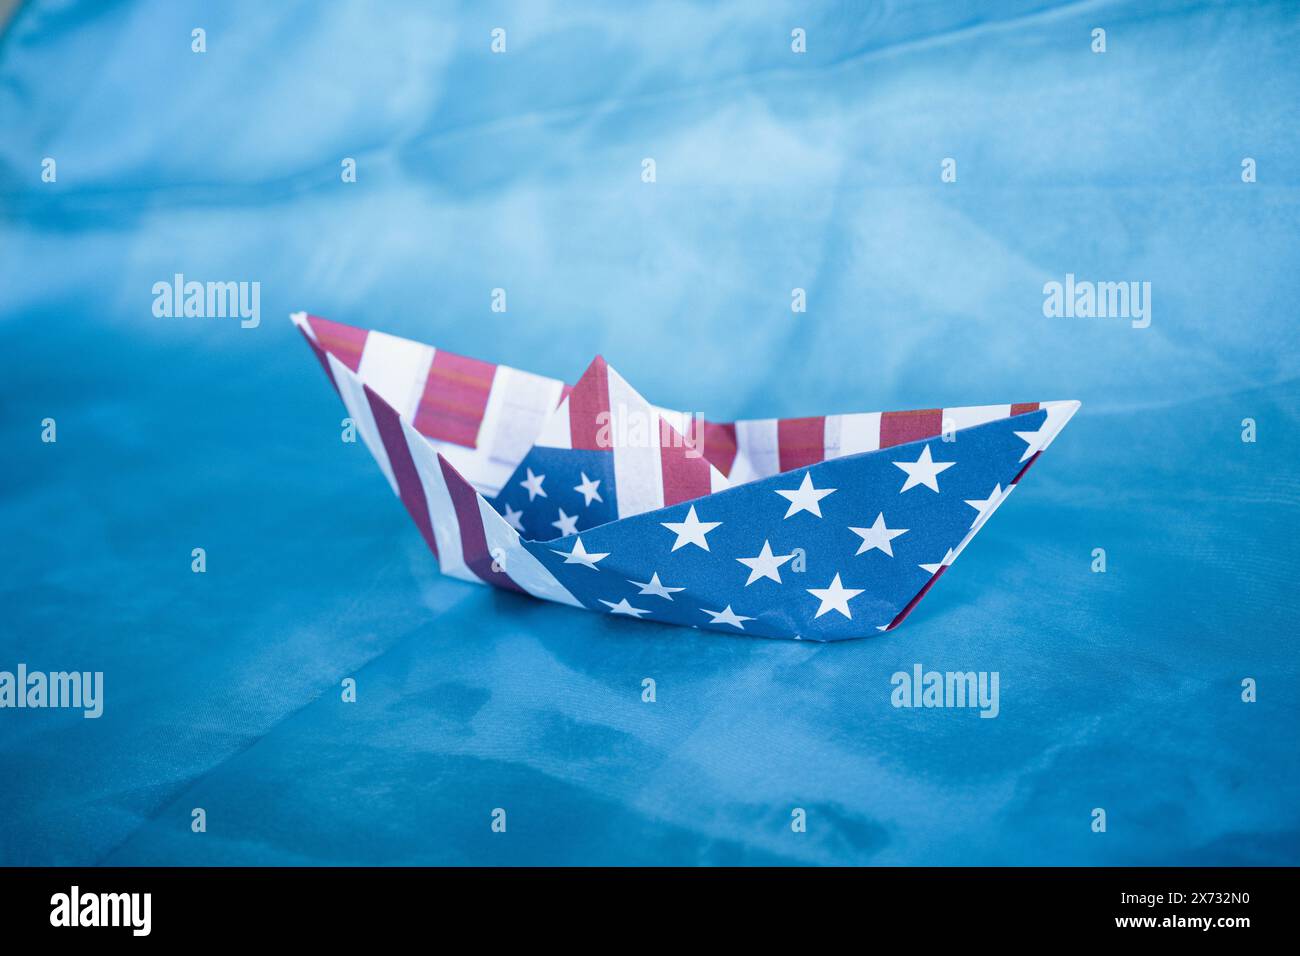 Bateau en papier avec drapeau américain sur fond bleu. Concept Columbus Day. Banque D'Images